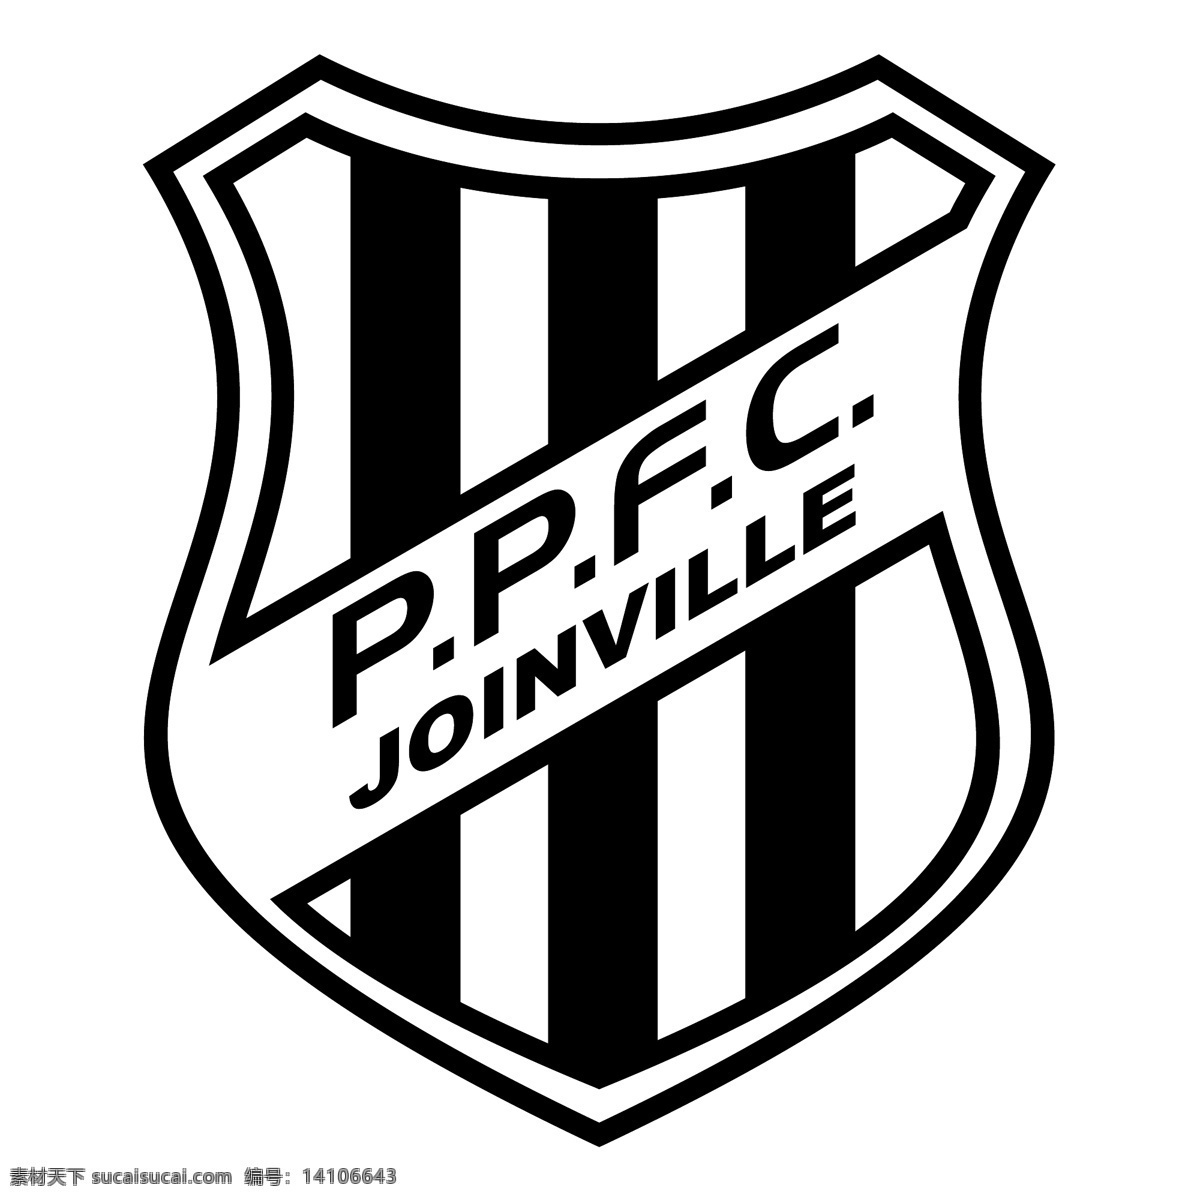 庞特 普雷 塔 队 足球 俱乐部 sc 免费 sc标志 标志 自由 psd源文件 logo设计